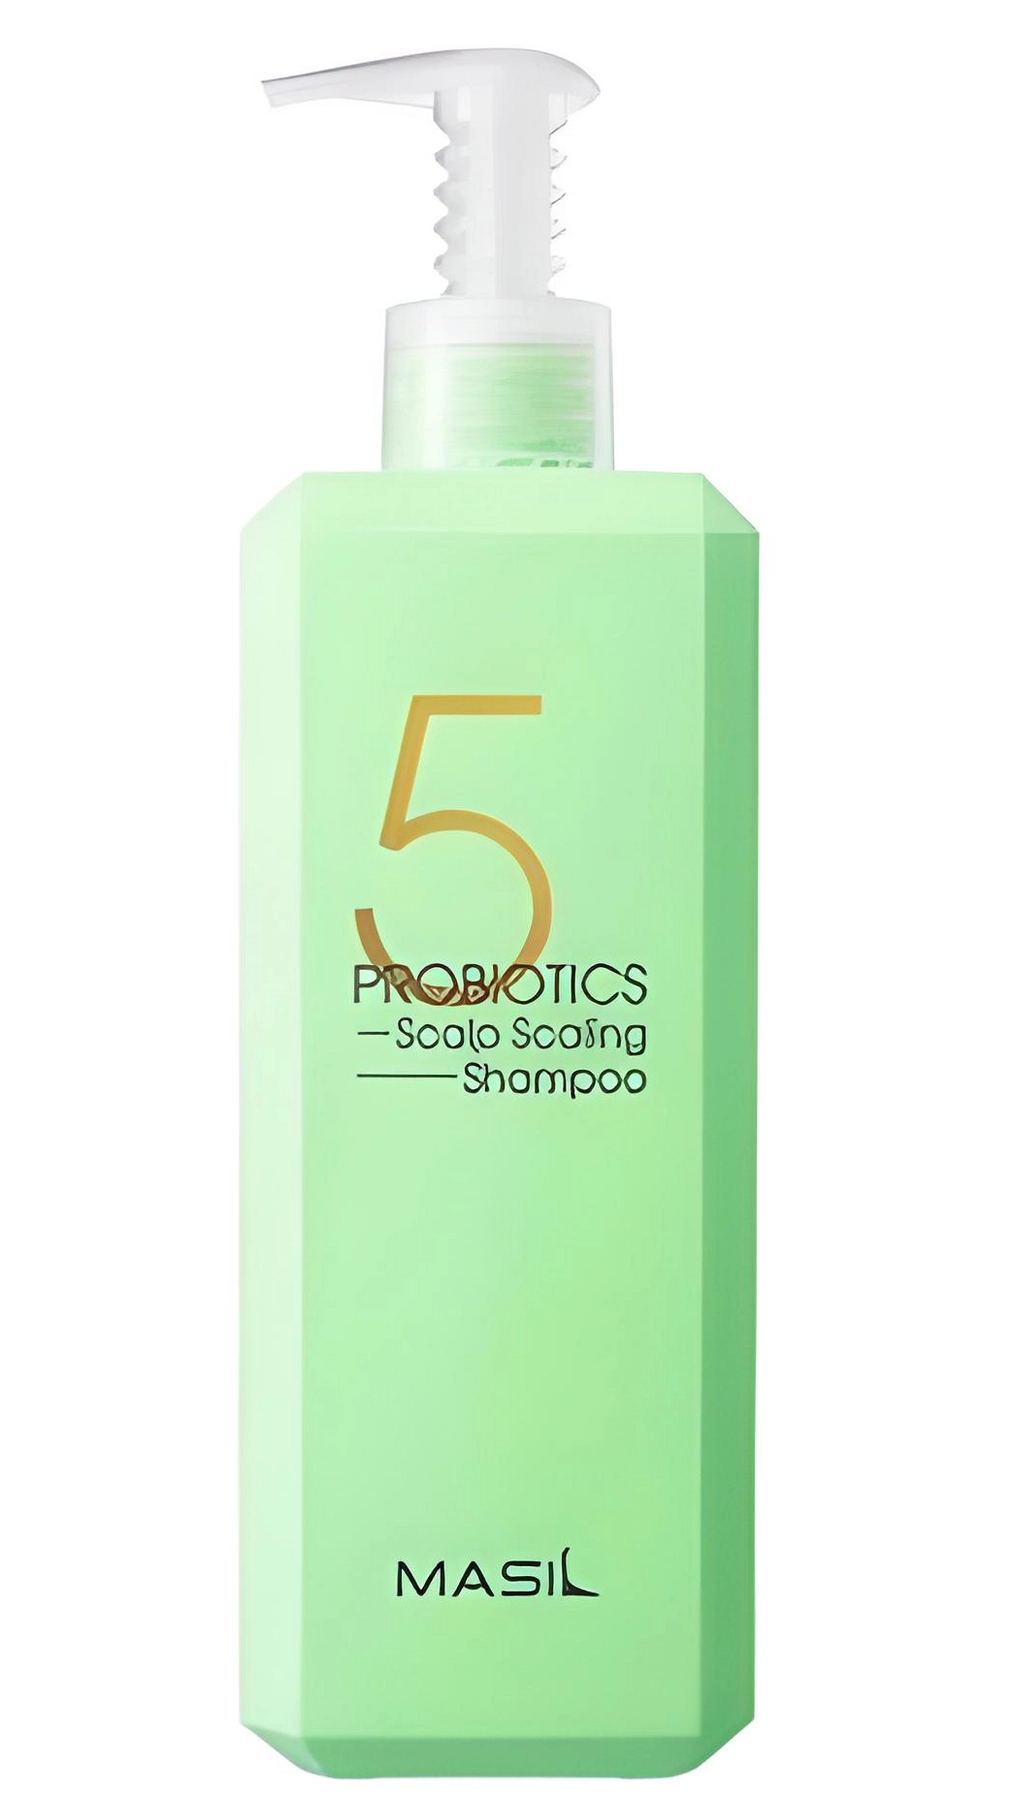 Шампунь для глубокого очищения жирной кожи головы с пробиотиками - Masil 5 Probiotics Scalp Scaling Shampoo, 500 мл - фото N1